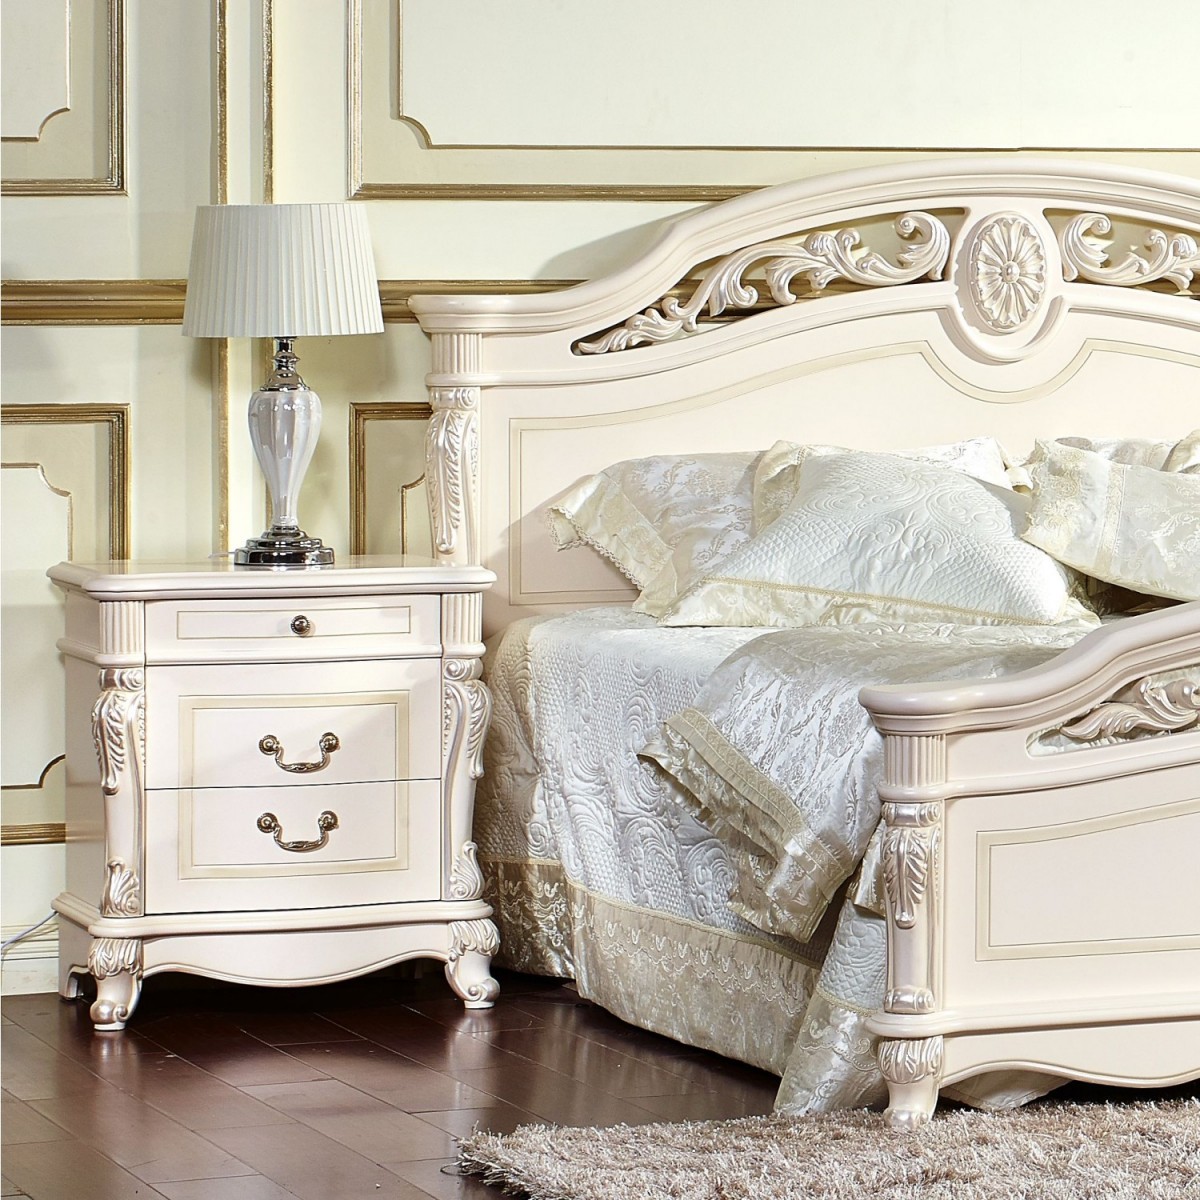 белая мебель для спальни от производителя